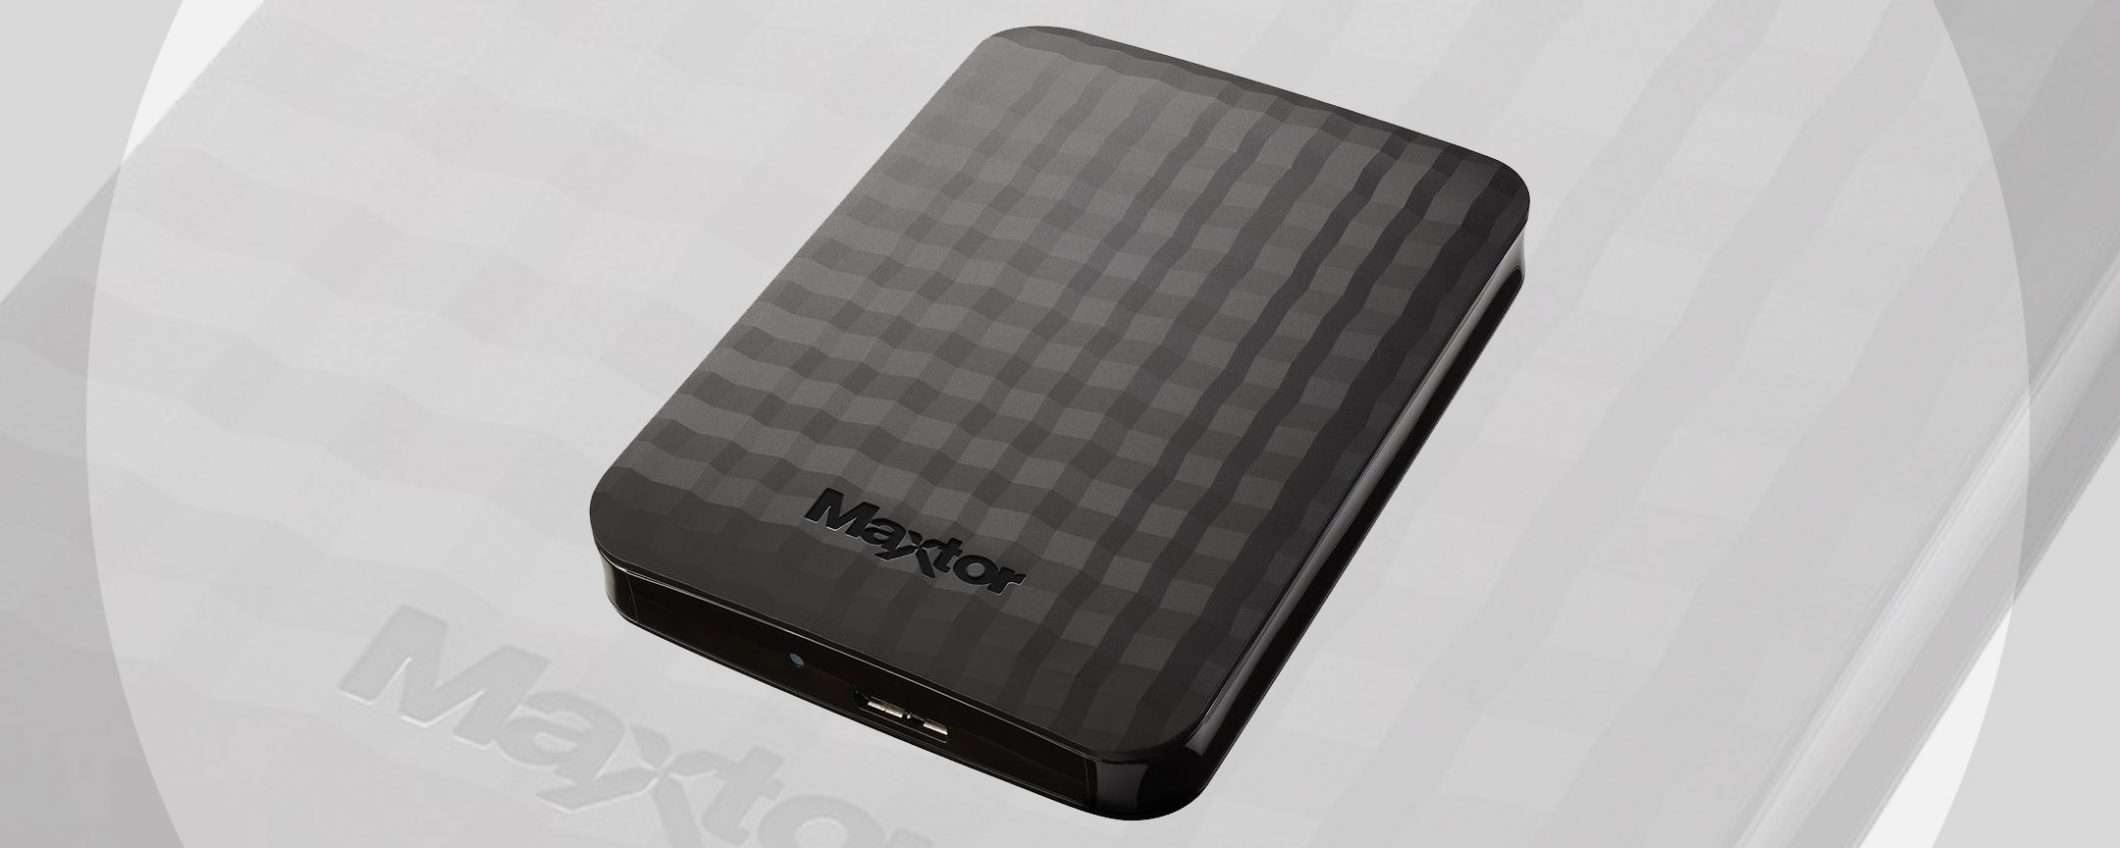 Offerte eBay: HDD esterno Maxtor 2 TB a -25%